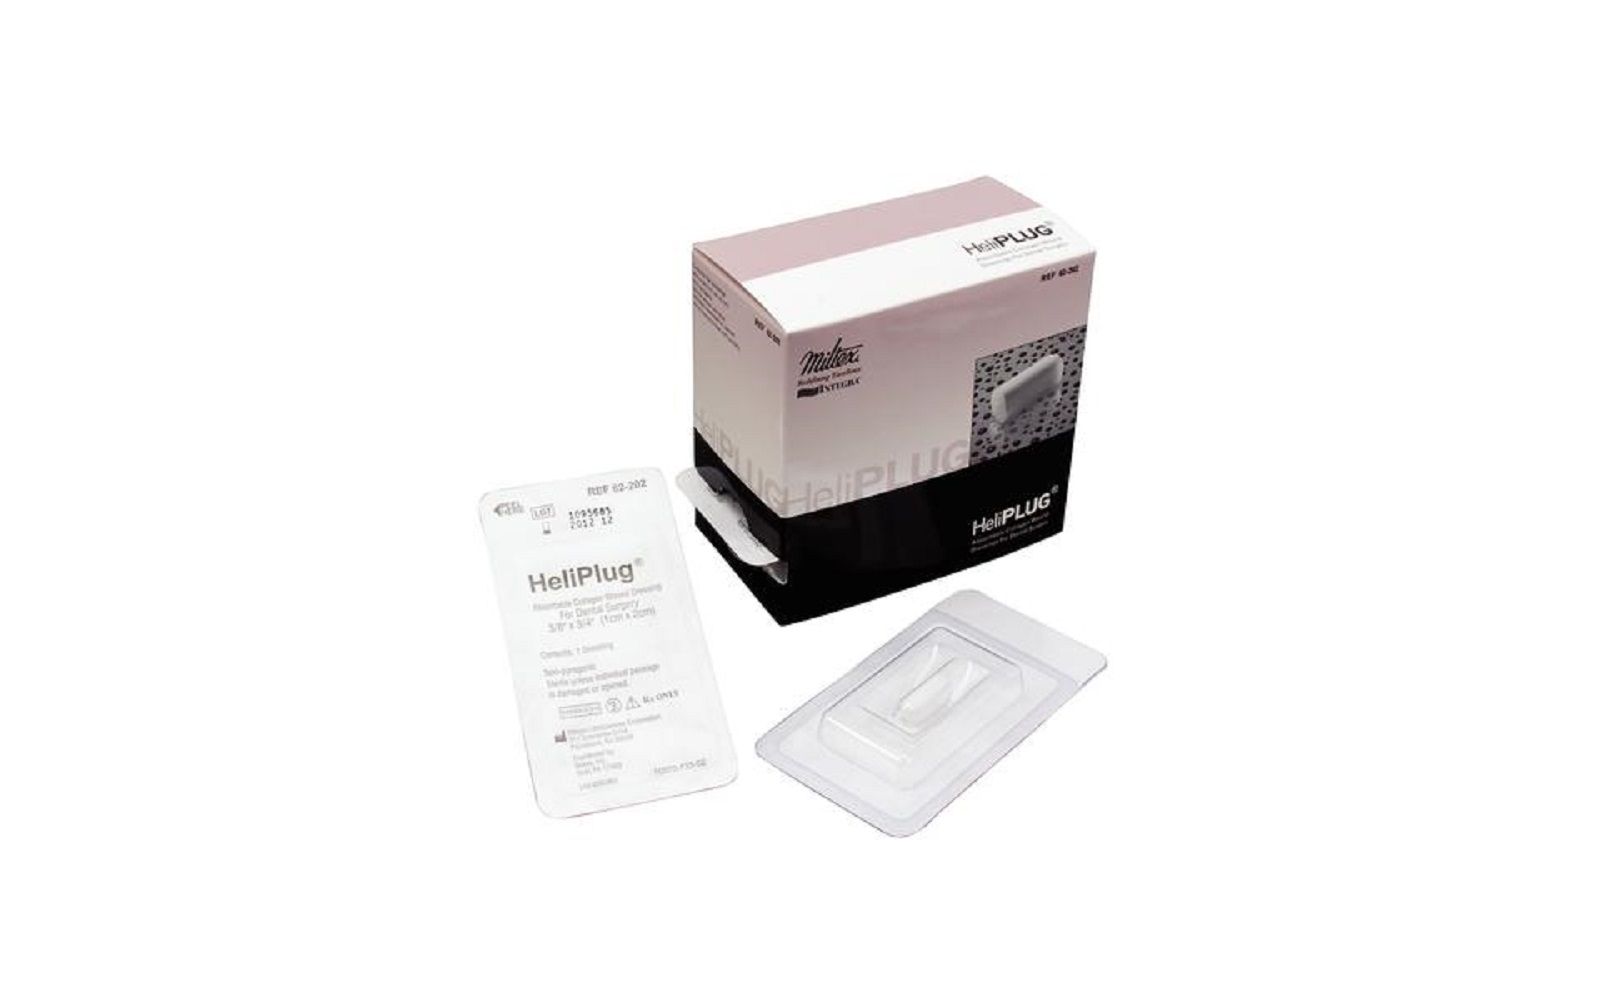 Heliplug® collagen wound dressing – 3/8" x 3/4", 10/ box